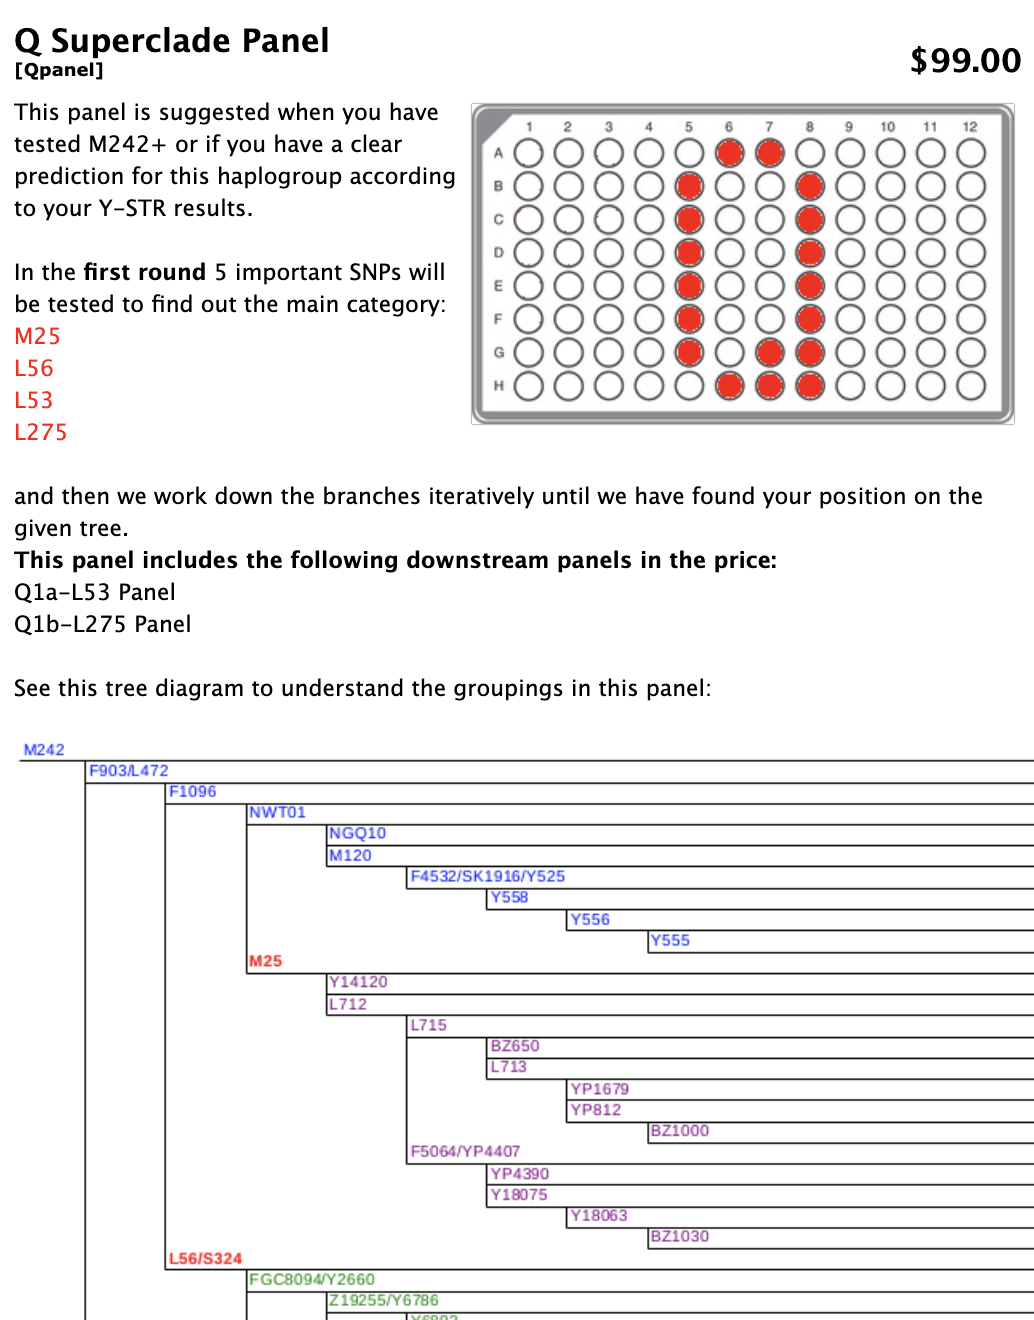 تفاصيل لوحة Q Superclade تعرض رسمًا تخطيطيًا للوحة بها عدة دوائر ملونة باللون الأحمر. في الجزء السفلي ، مخطط شجرة يشرح التجمعات في اللوحة